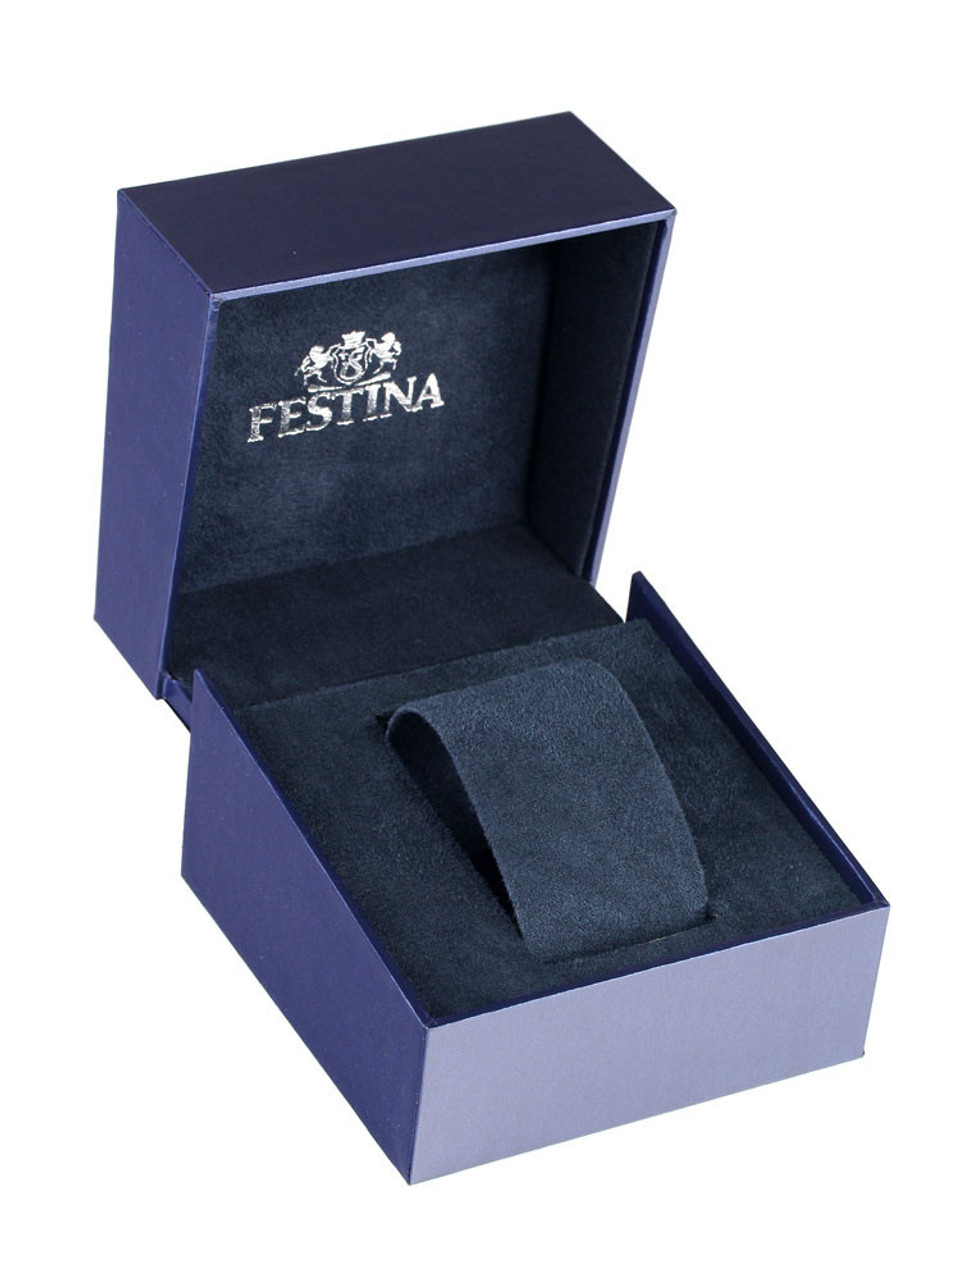 Festina F20542-1 Timeless Chronograph 44mm - Genuine owlica 5ATM Watches 